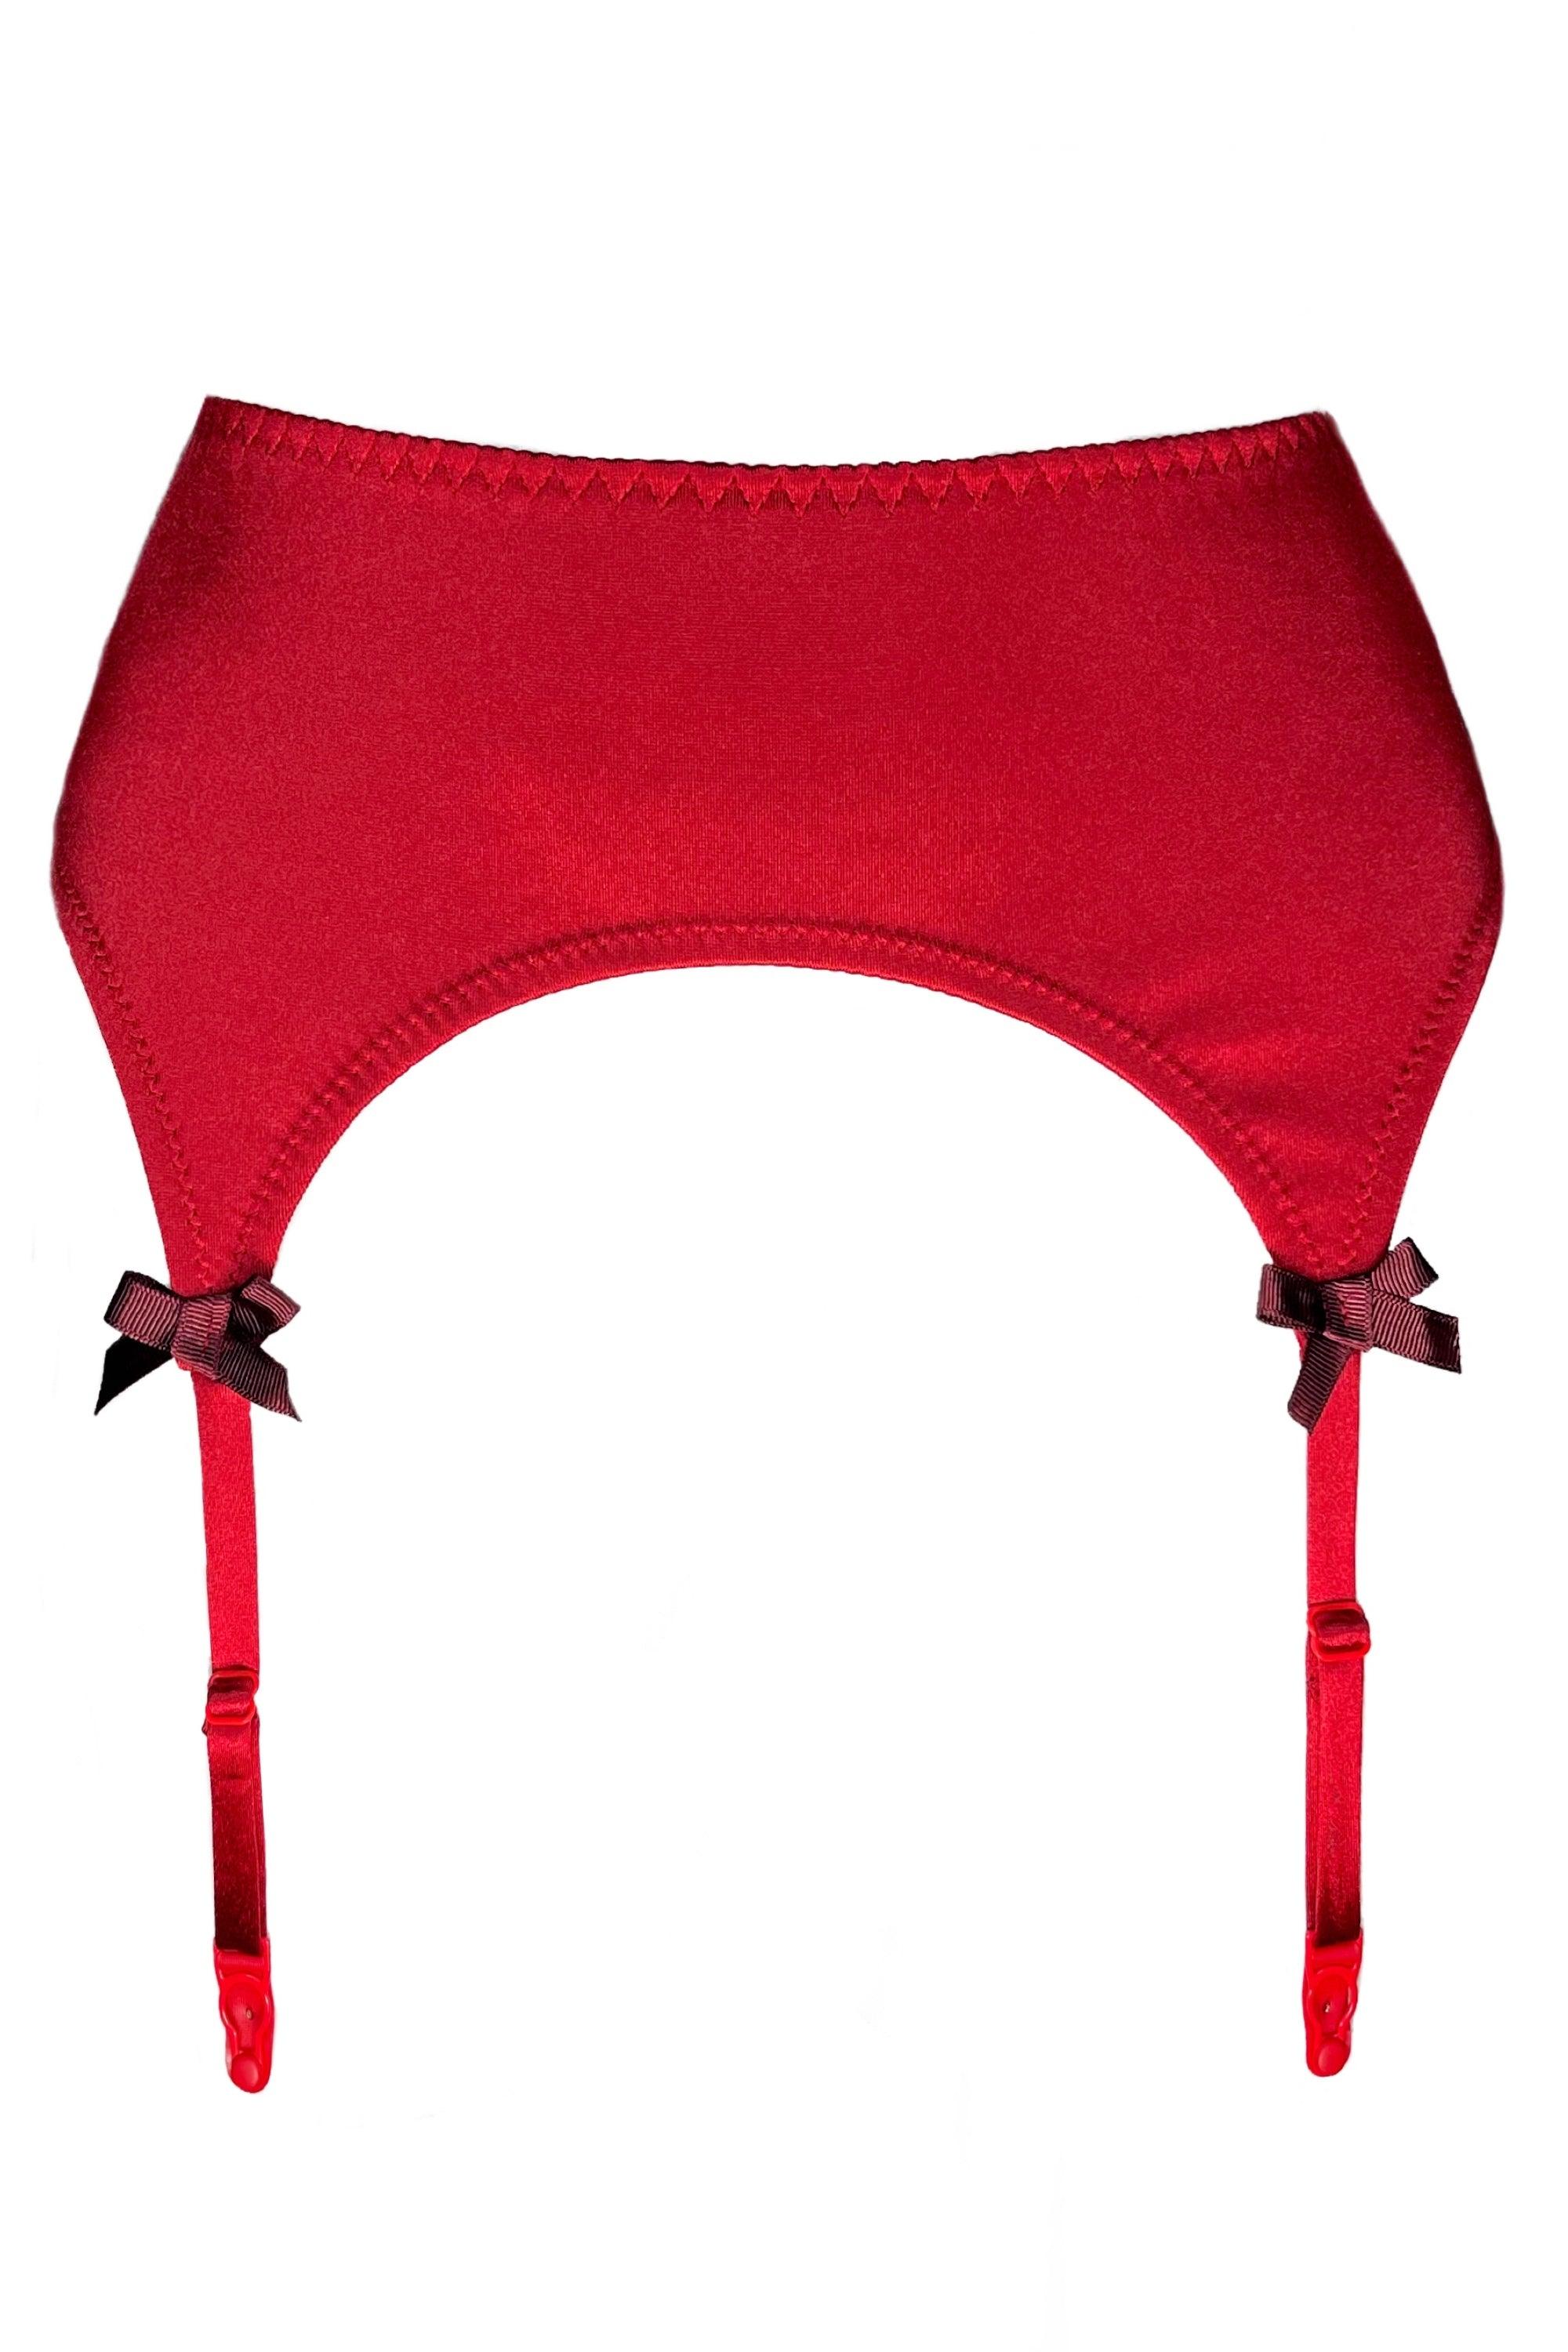 Valessa Gloss Rouge garter belt - yesUndress